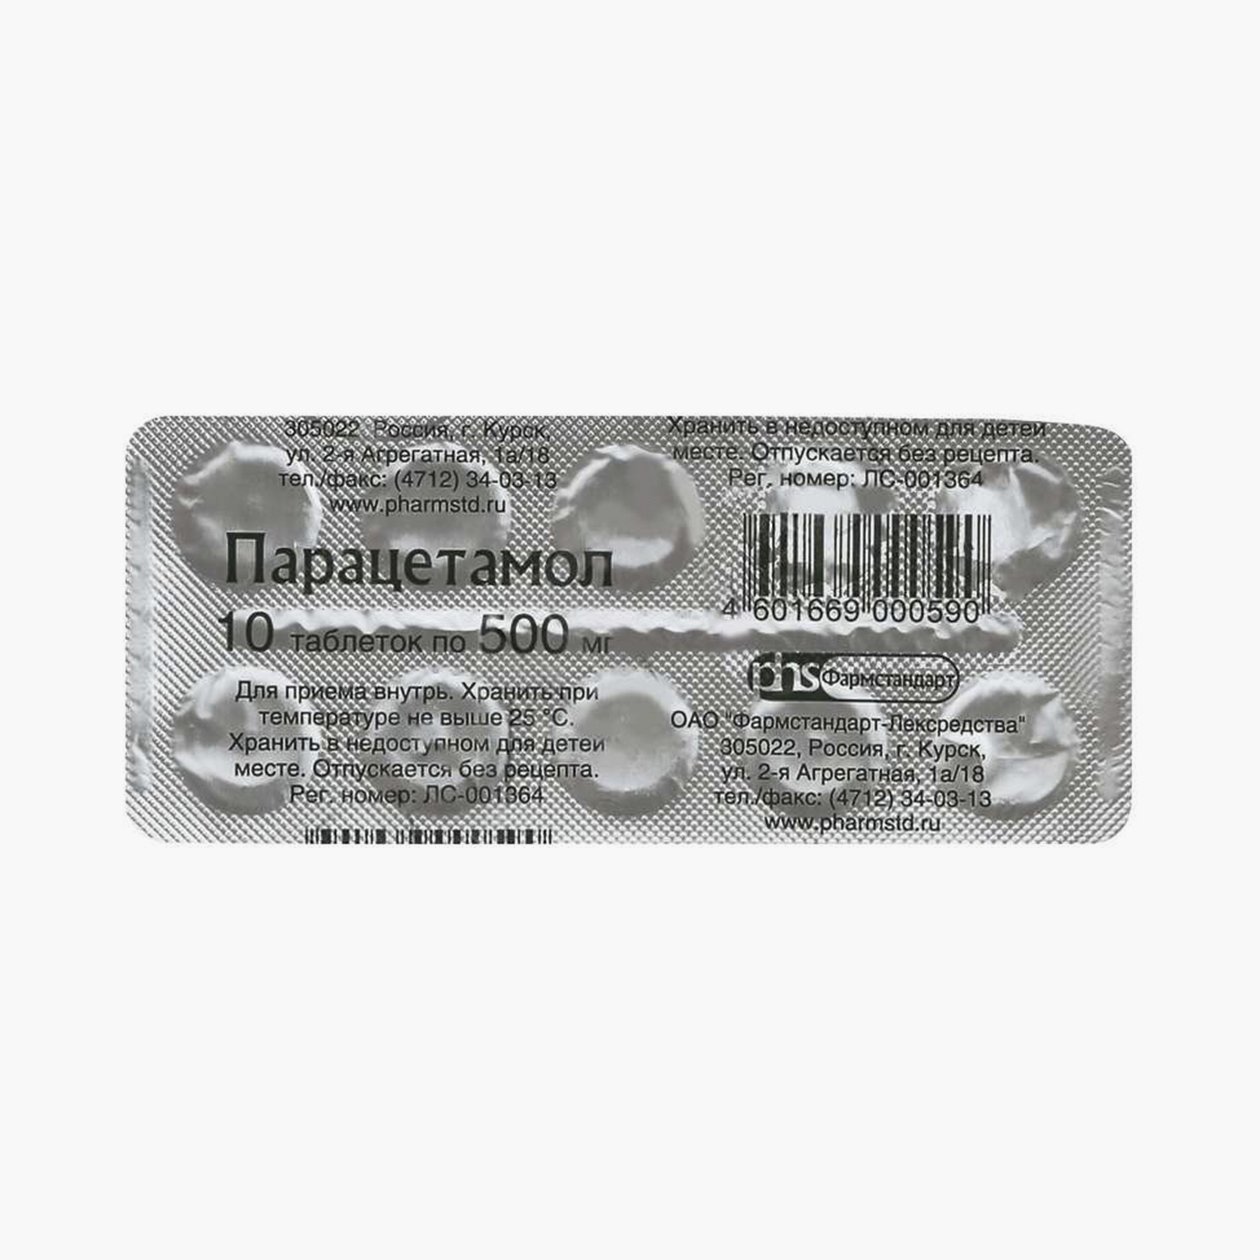 10 таблеток парацетамола 500 мг стоят от 6 ₽. Источник: asna.ru